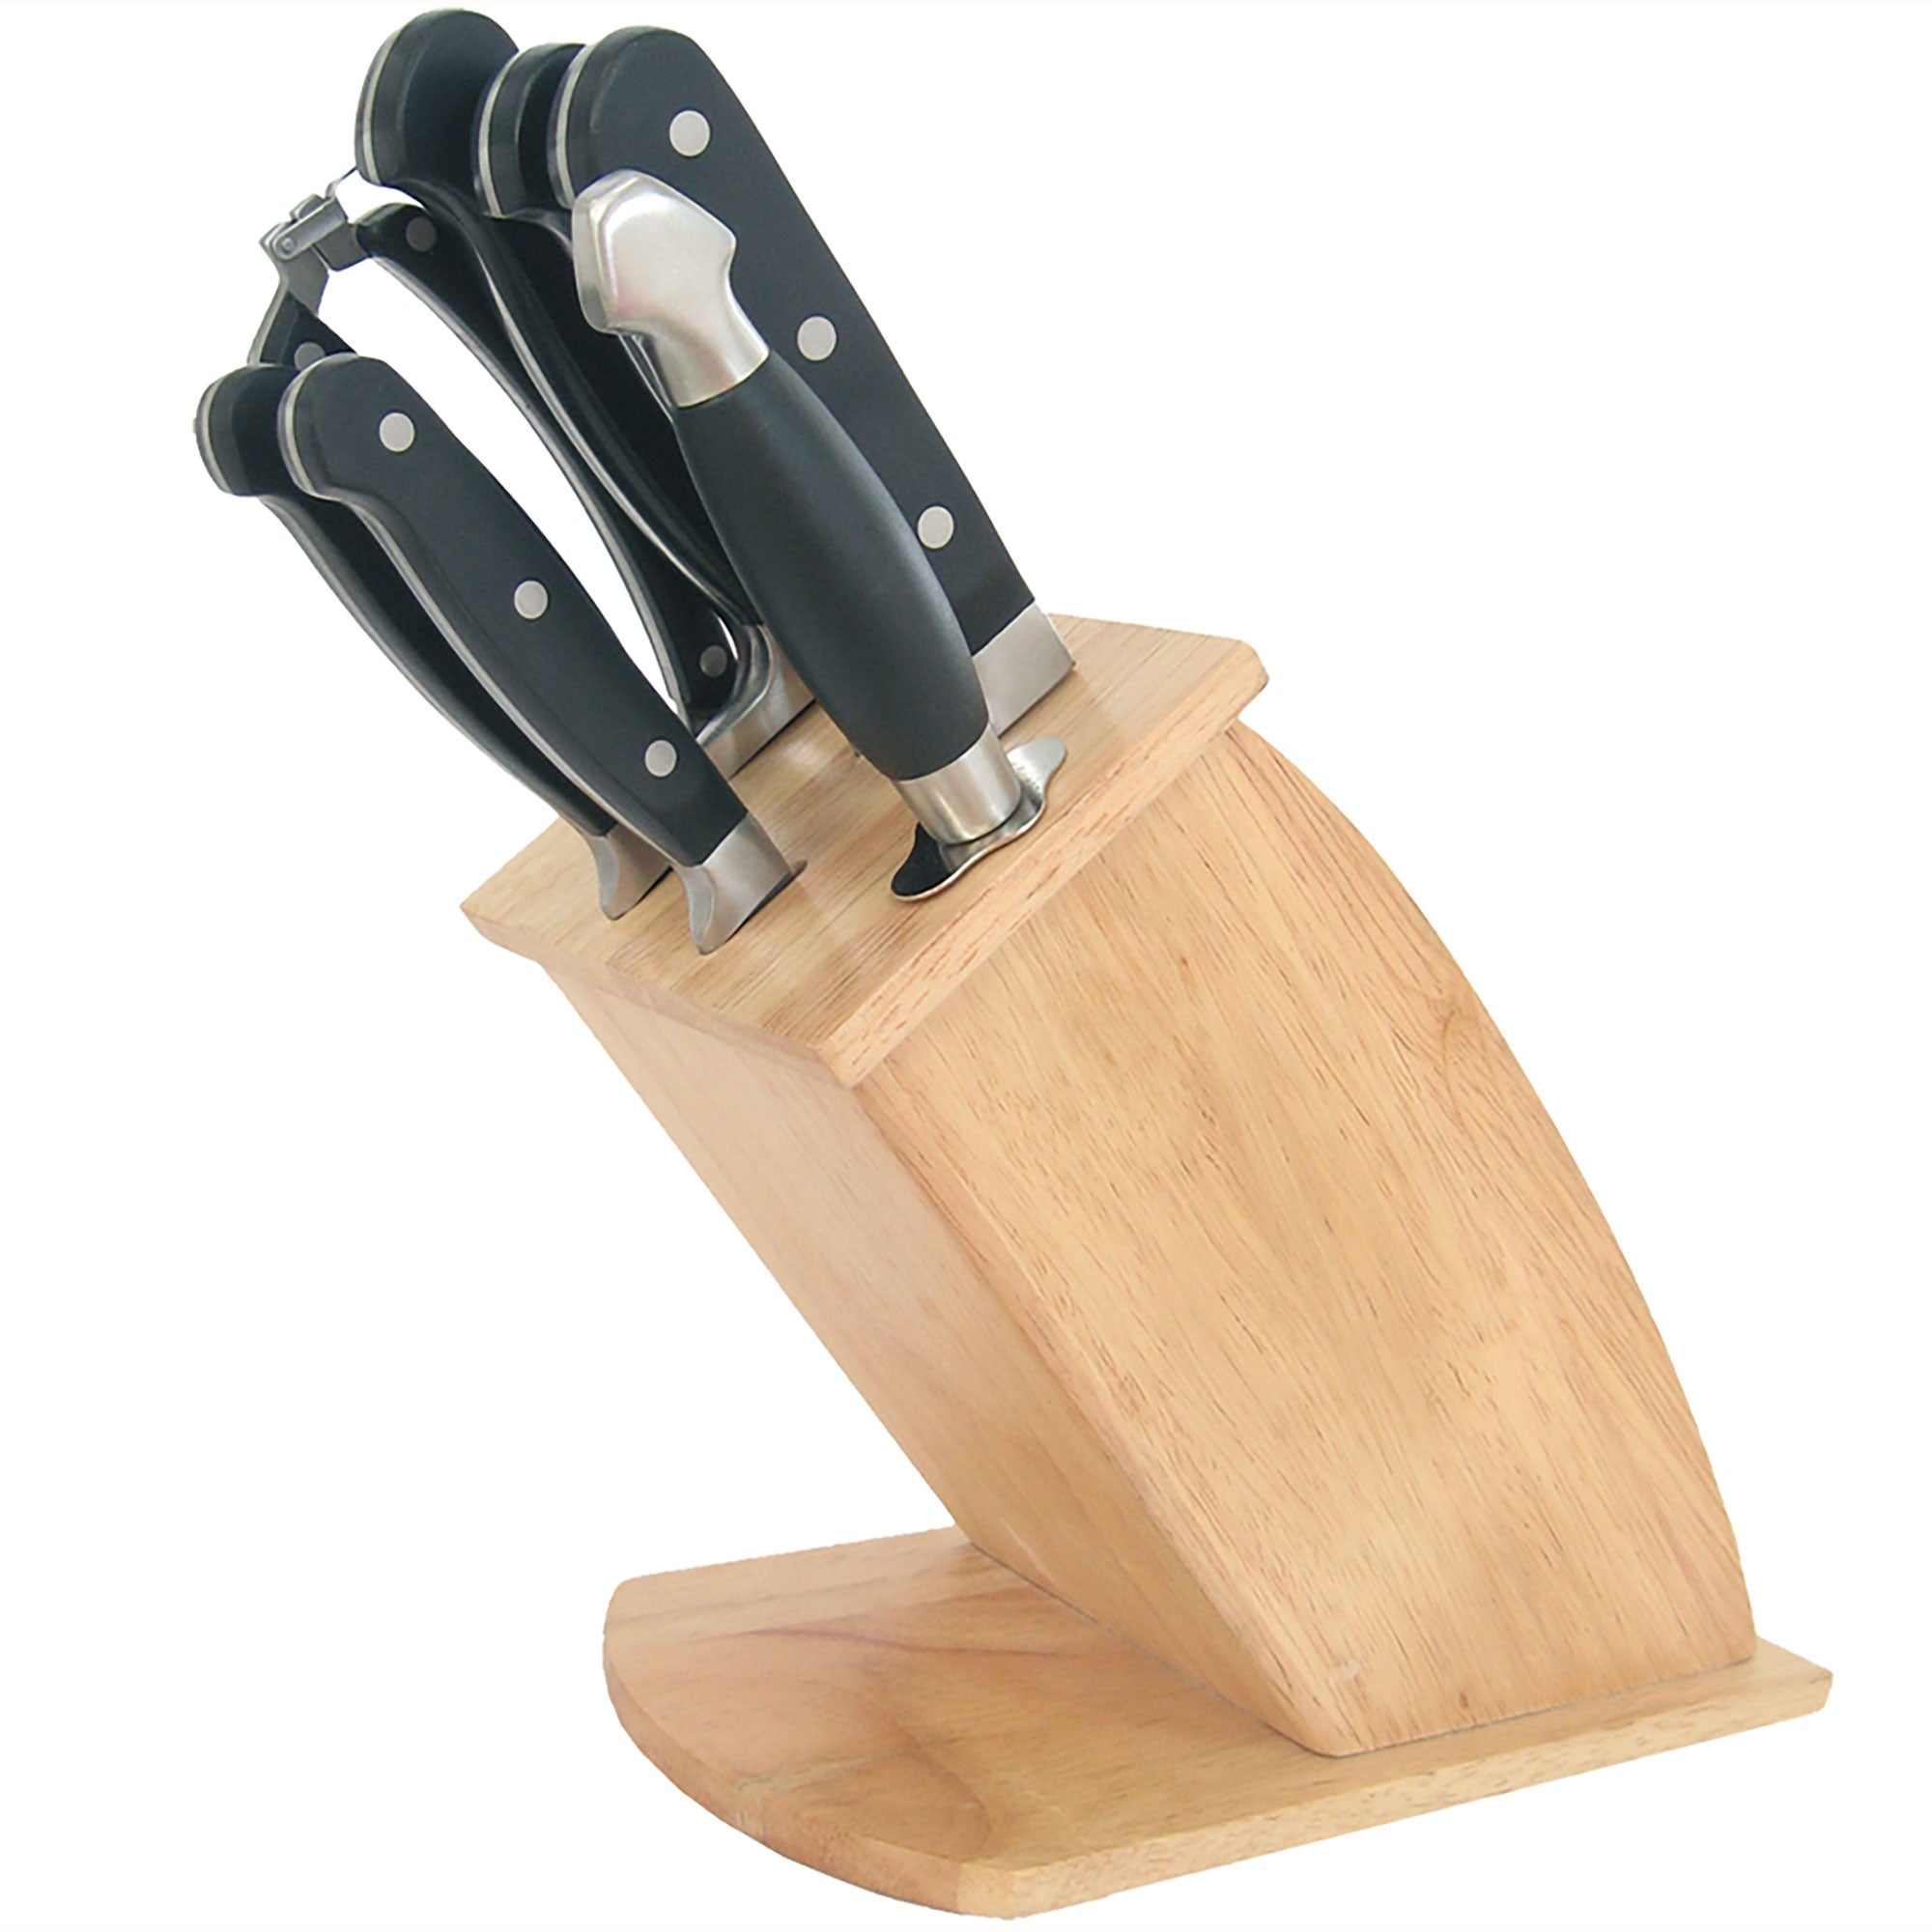 BASILISHOP - Ceppo Componibile 7 coltelli da cucina + 8 coltelli